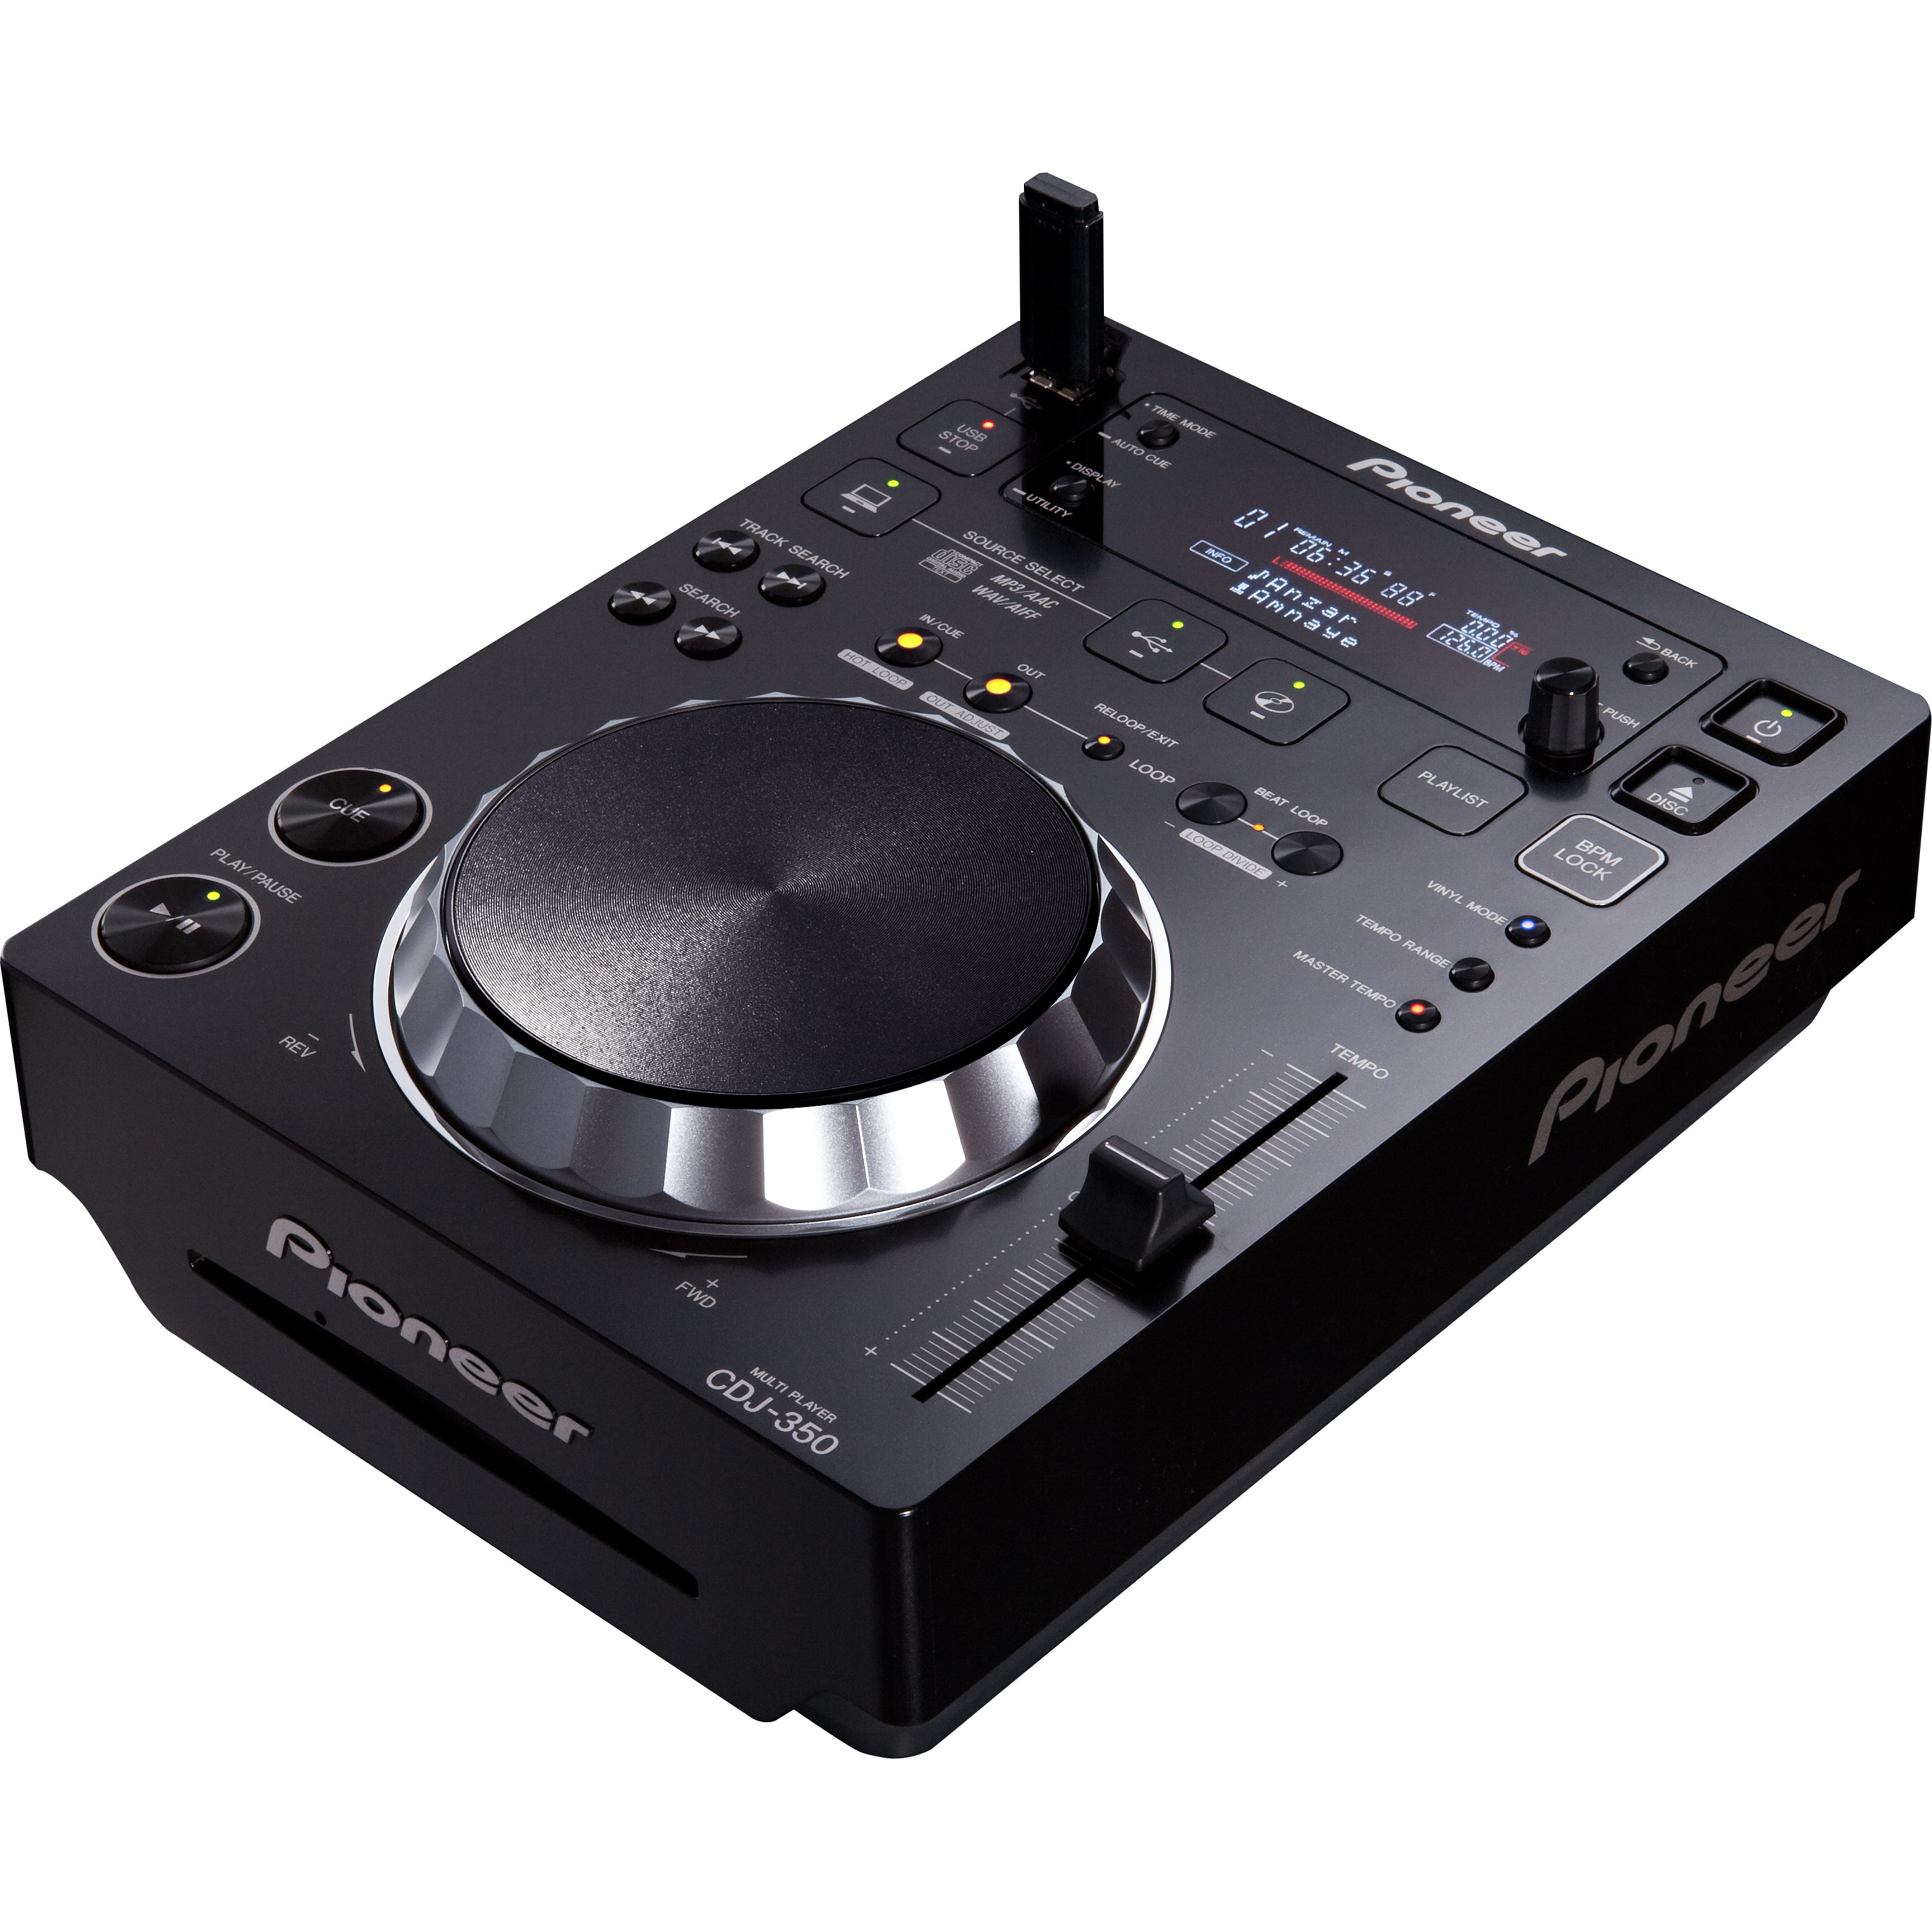 Đầu DJ CDJ 350 ( Pioneer DJ) - Hàng chính hãng